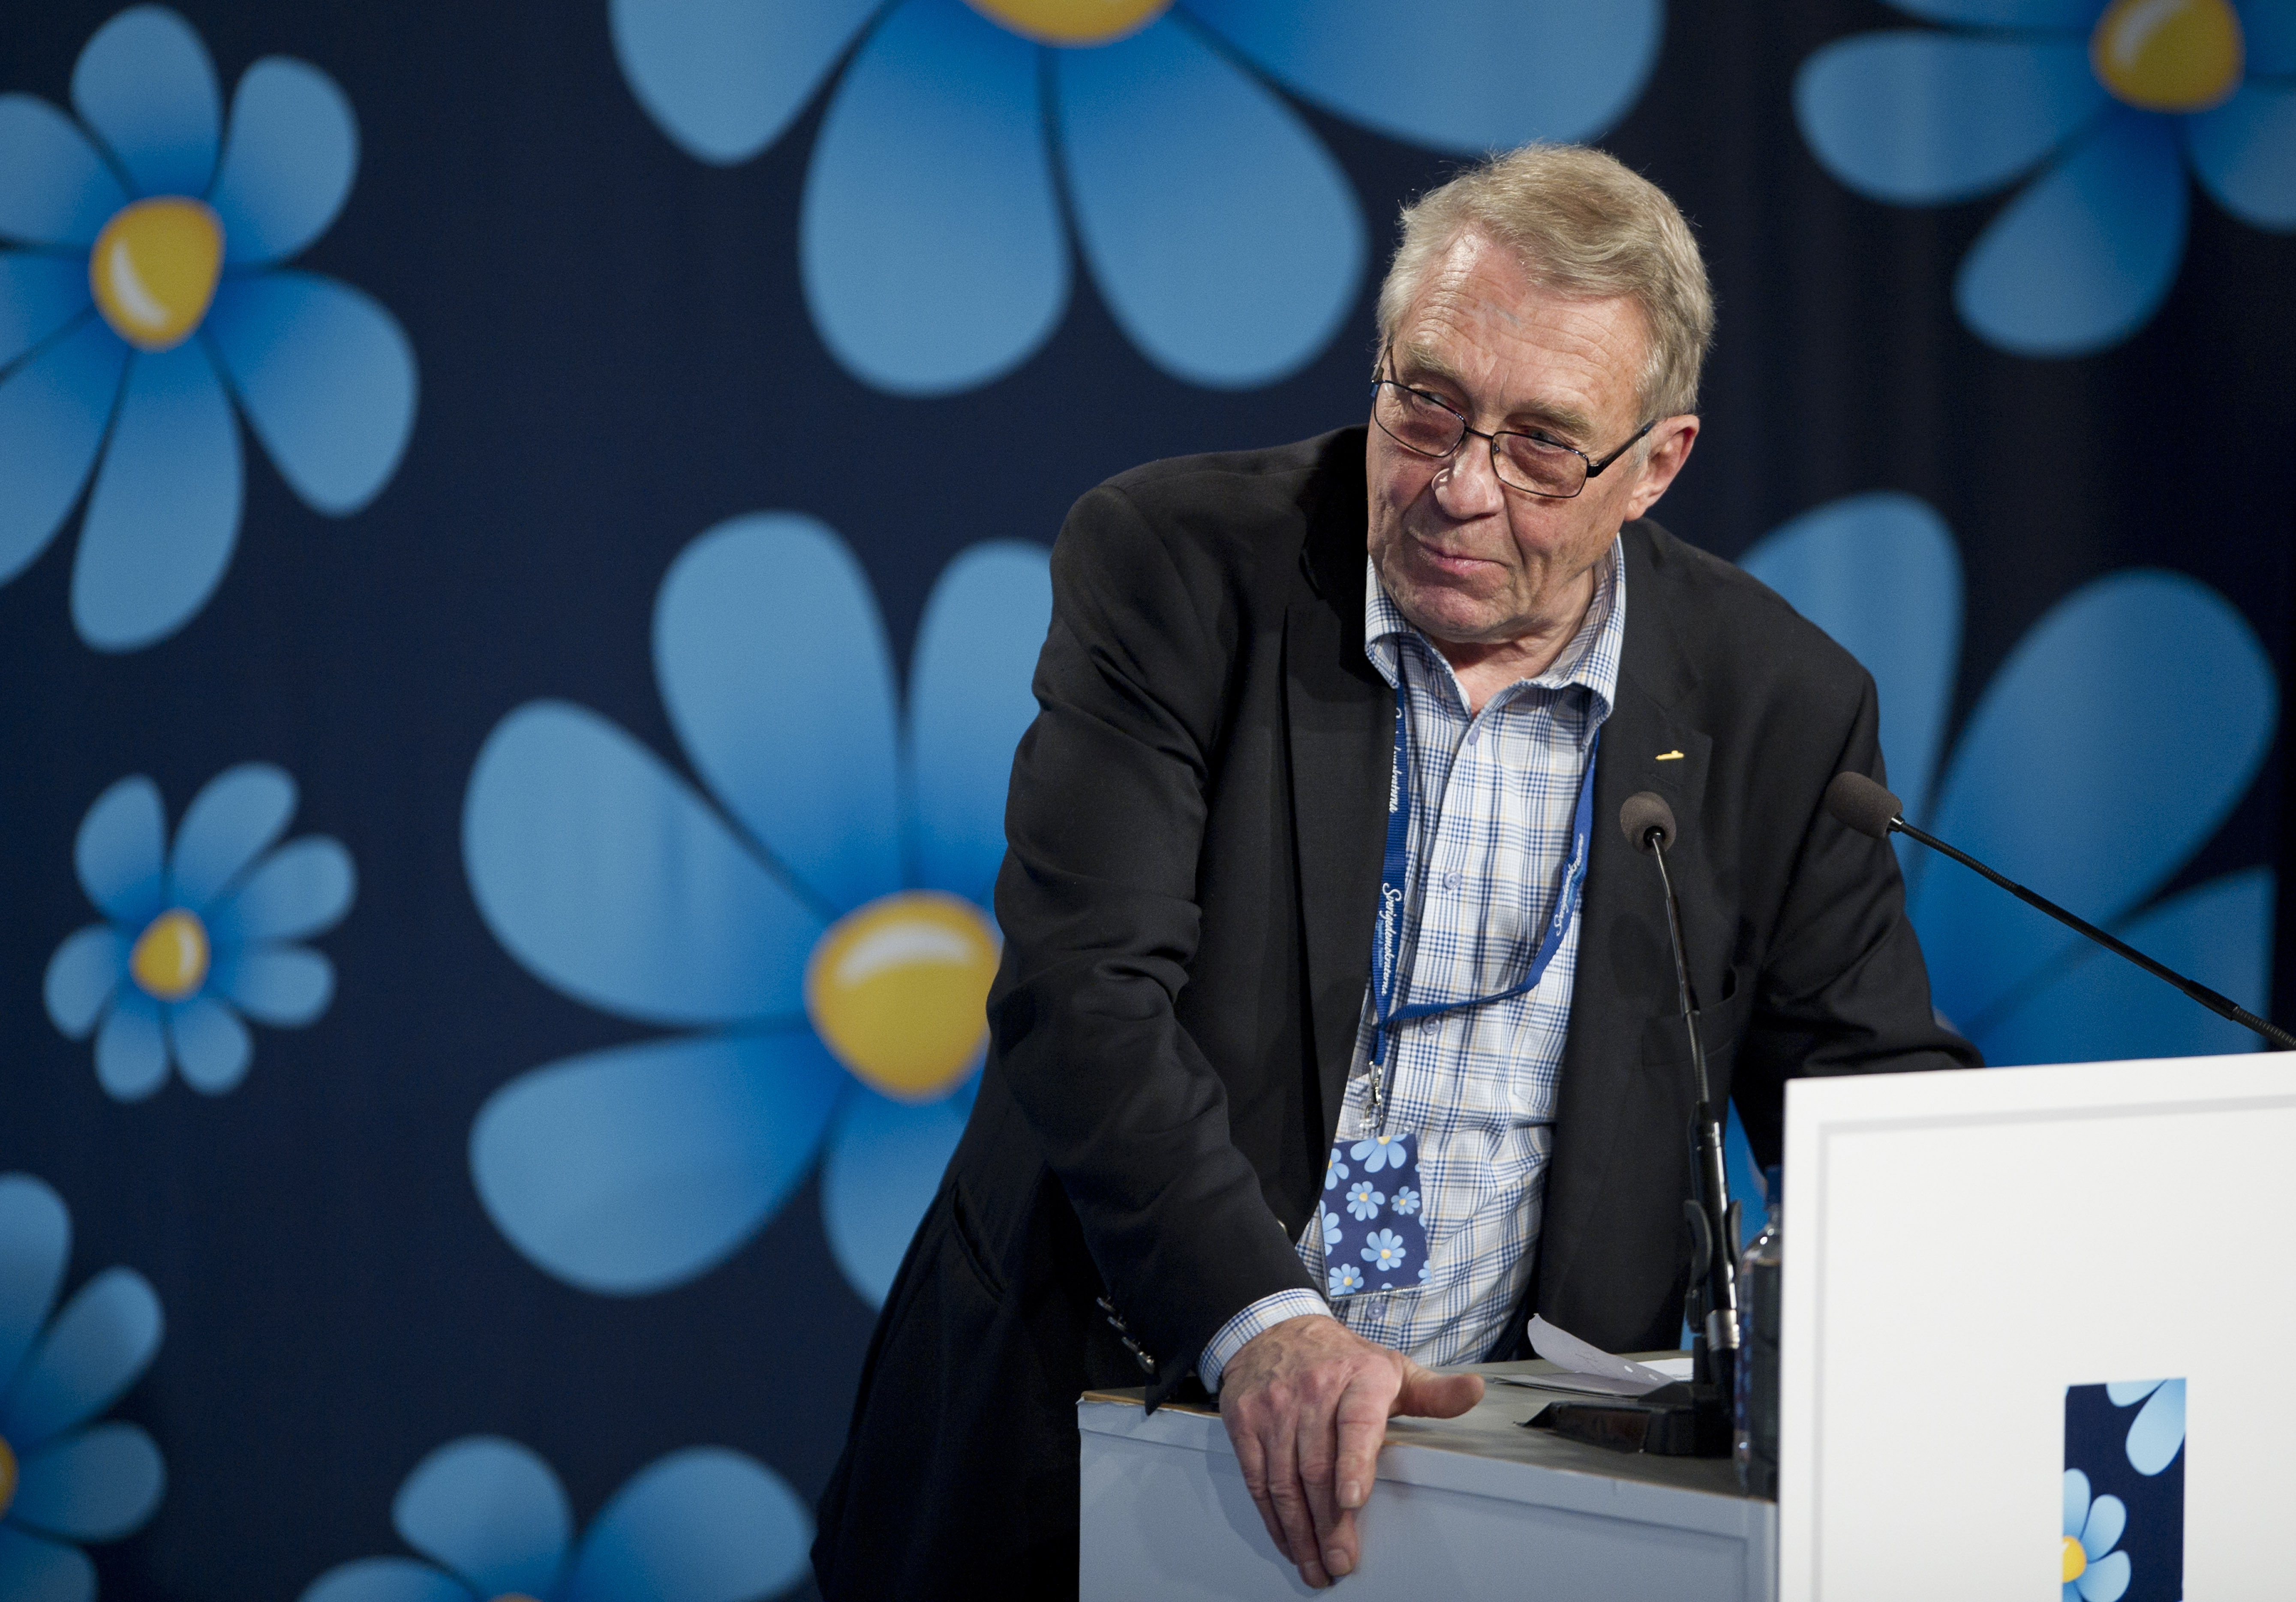 SD-politikern Bertil Malmberg misstänks för hets mot folkgrupp.